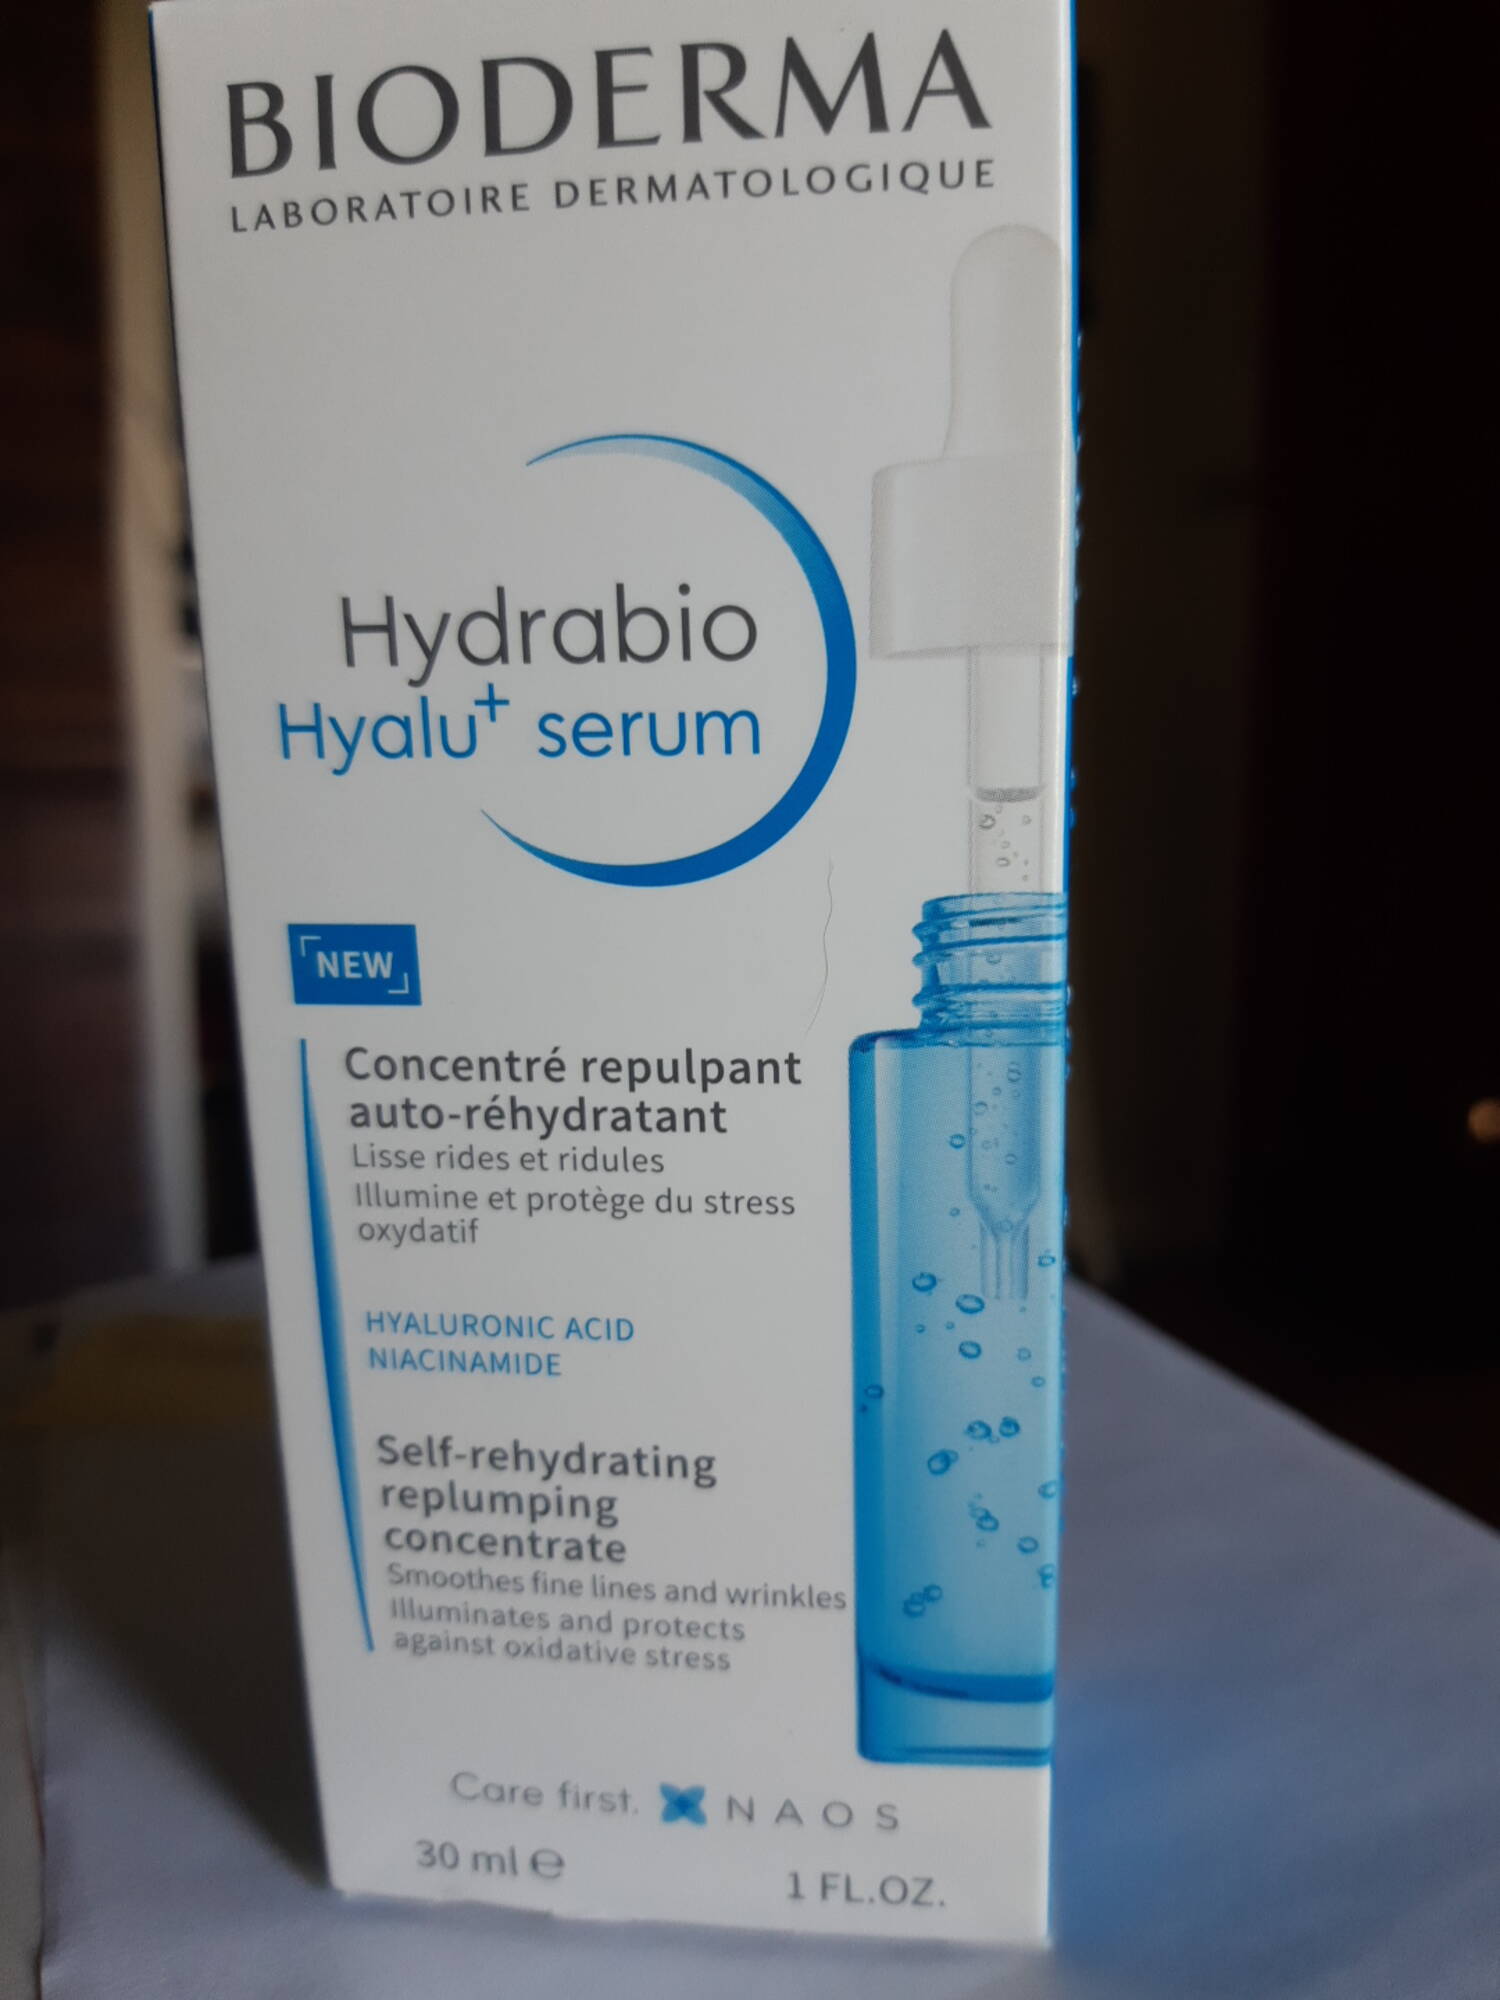 BIODERMA - Hydrabio Hyalu+ sérum - Concentré repulpant auto-réhydratant